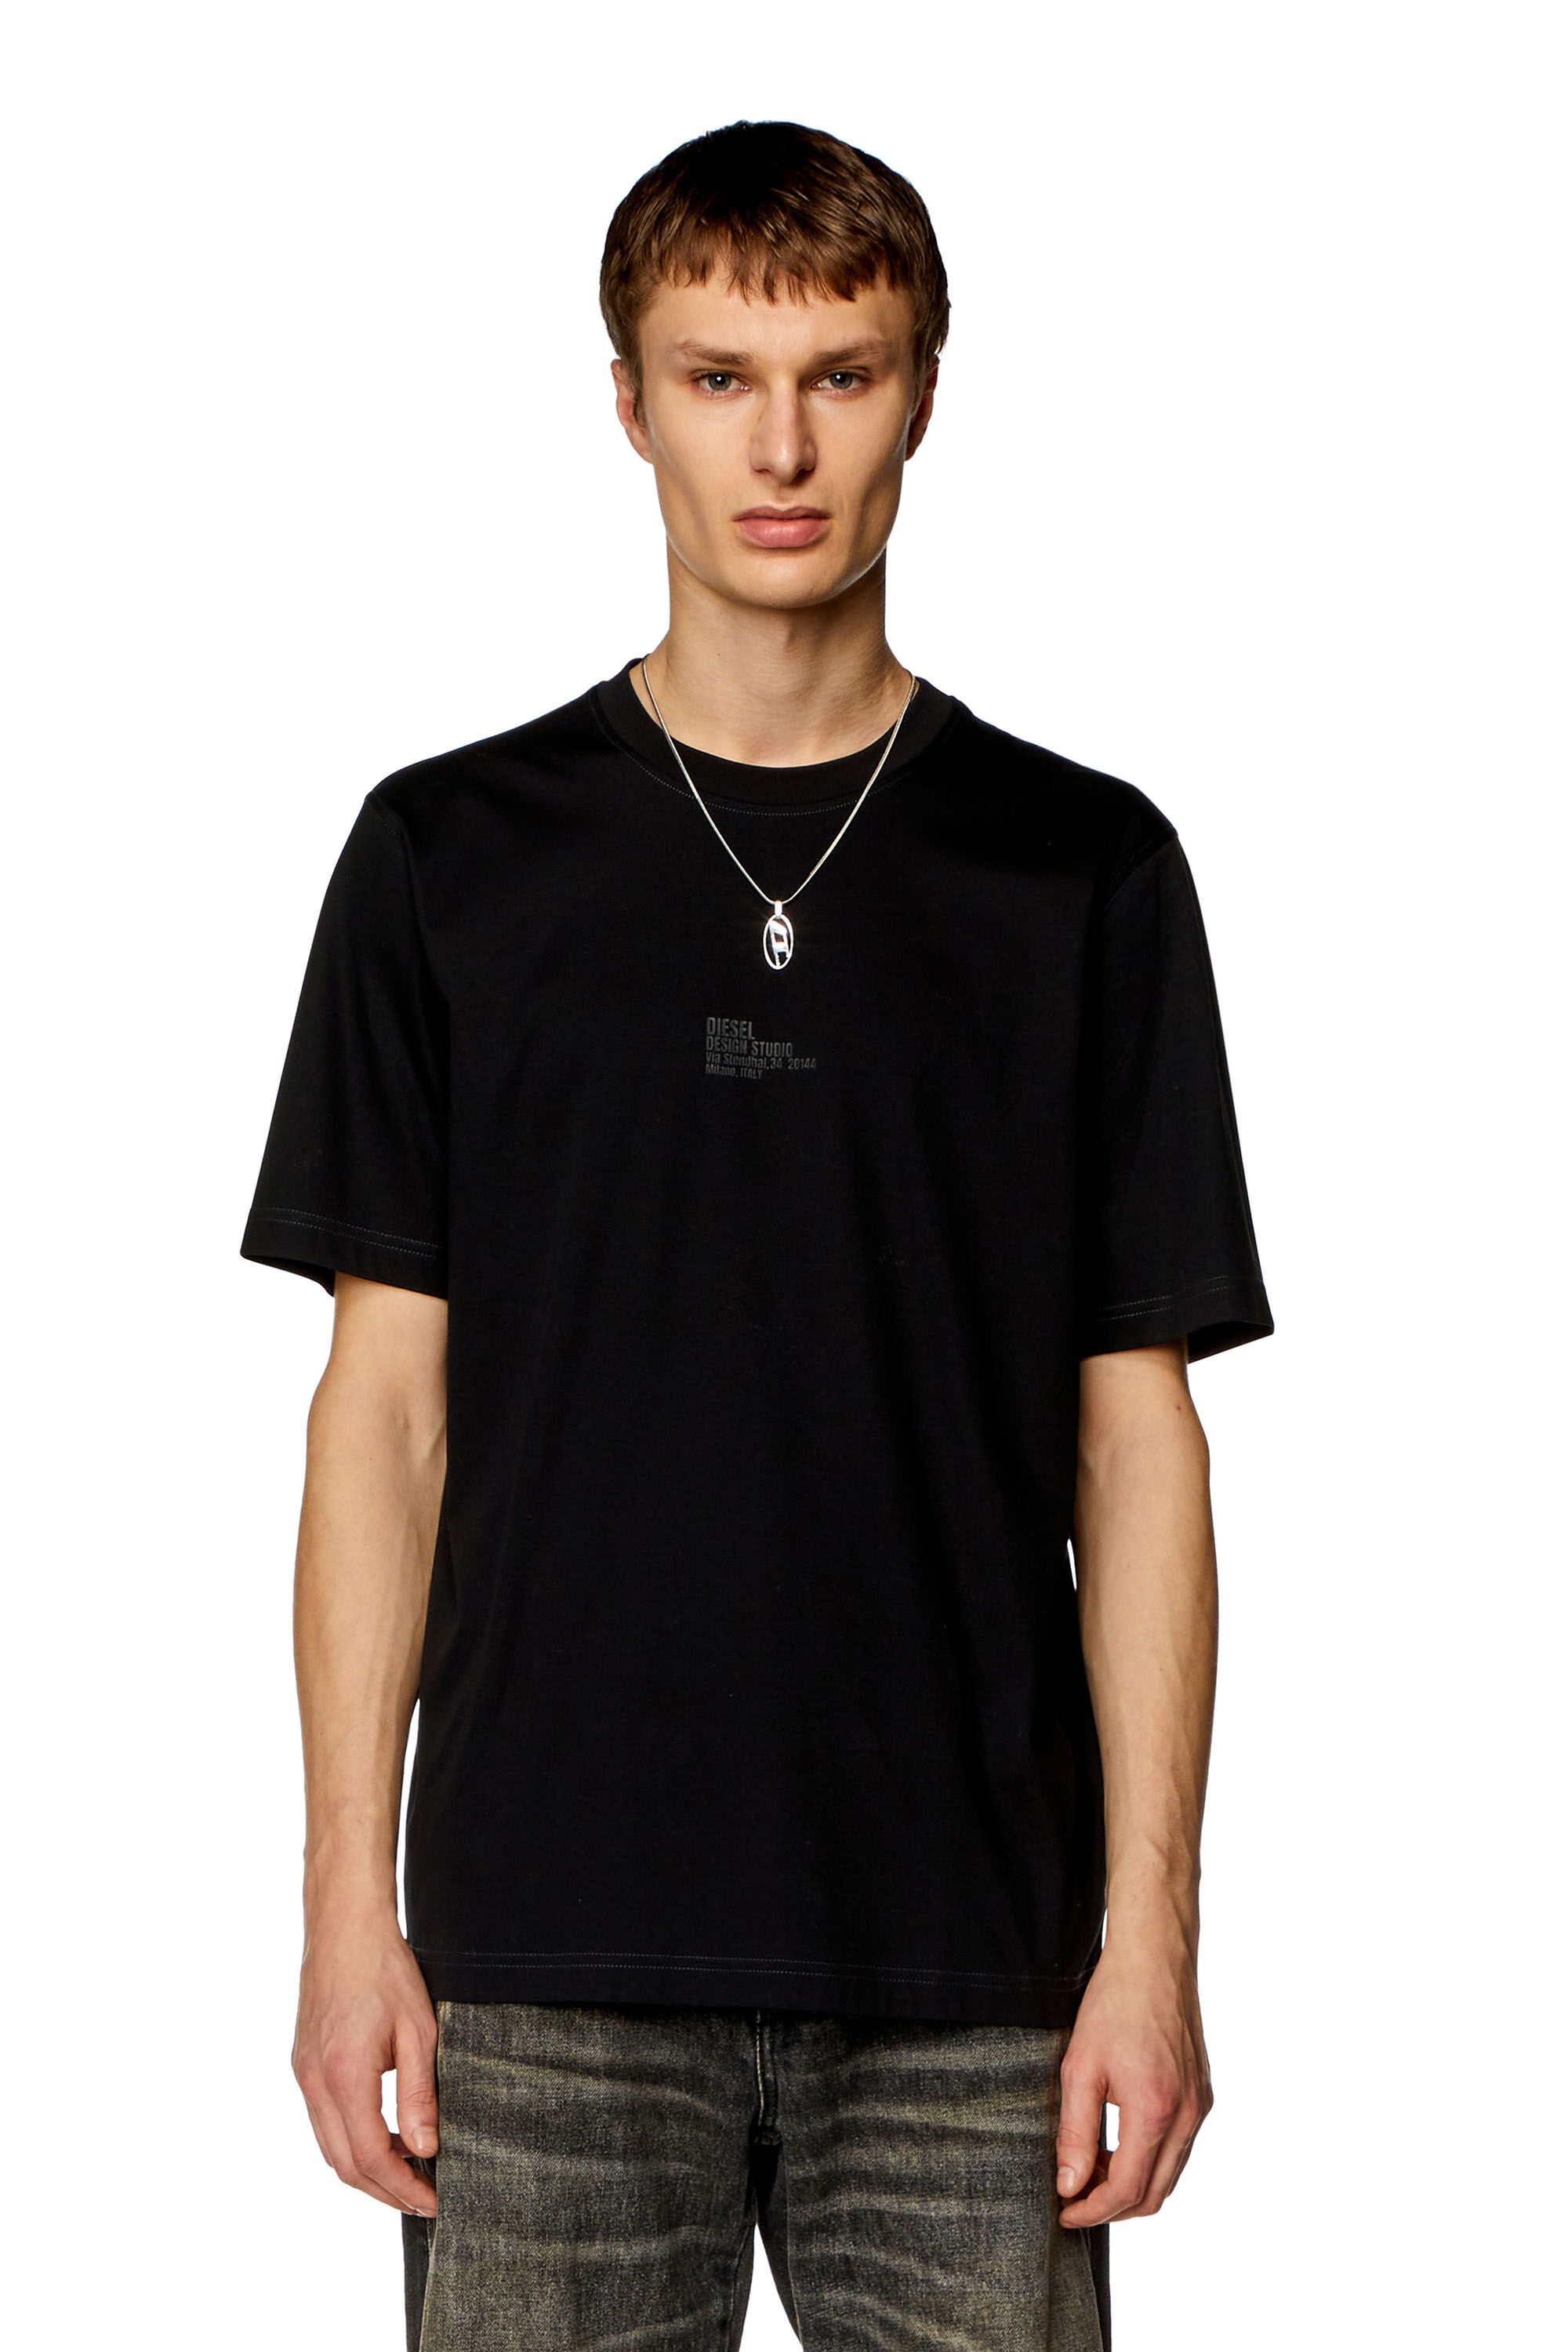 Men's T-shirt with Diesel Studio print | Black | Diesel